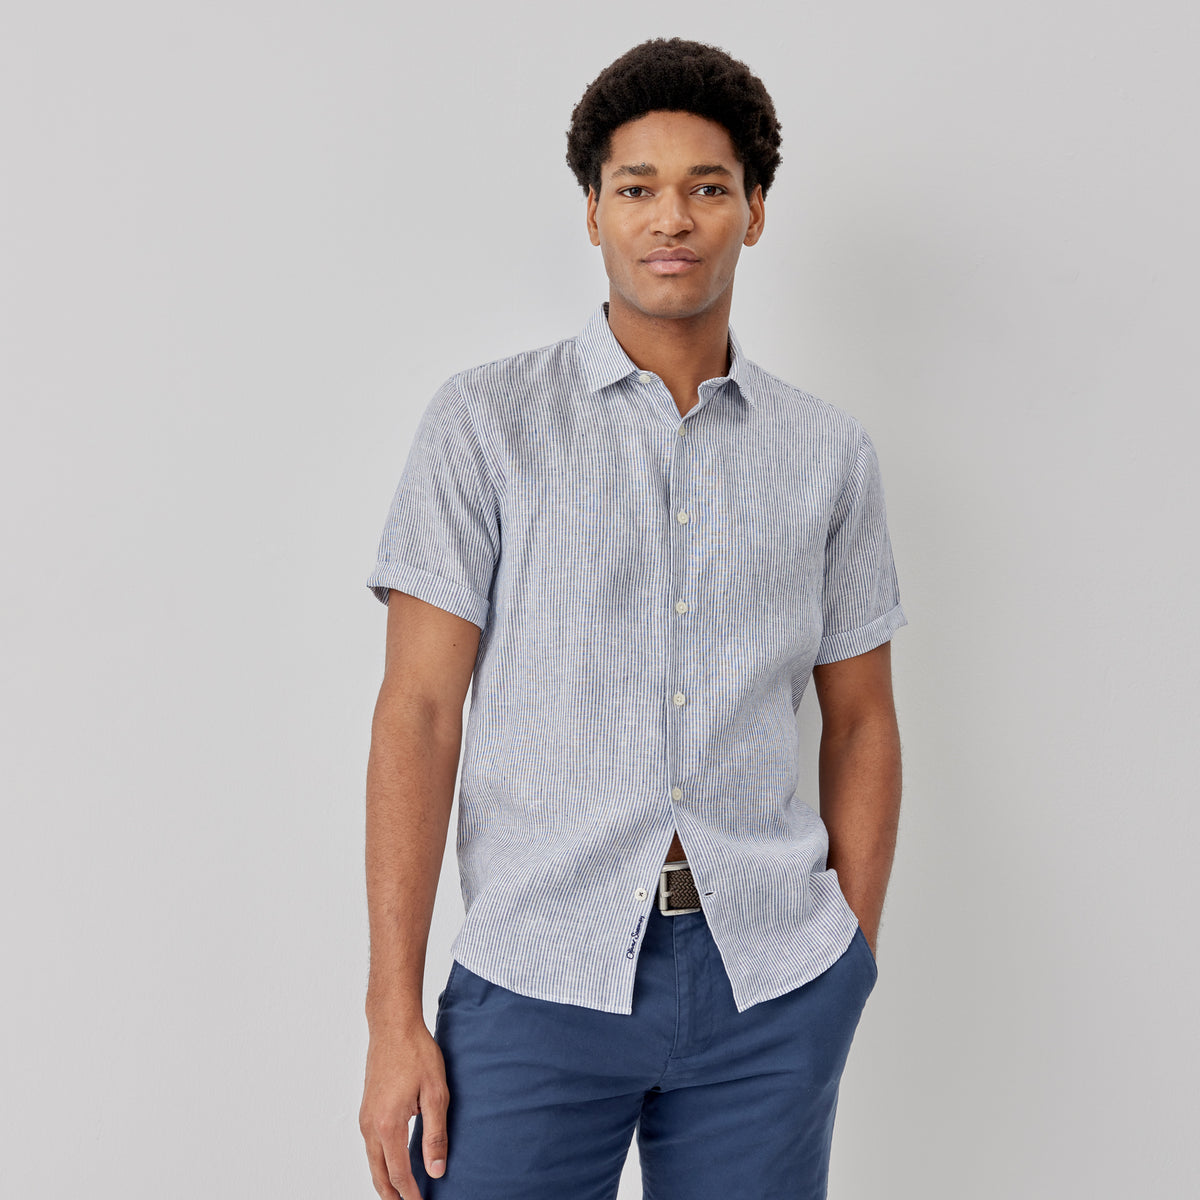 Eakring Blue/White | Men's Linen Short Sleeved Shirt | Men's Shirts ...